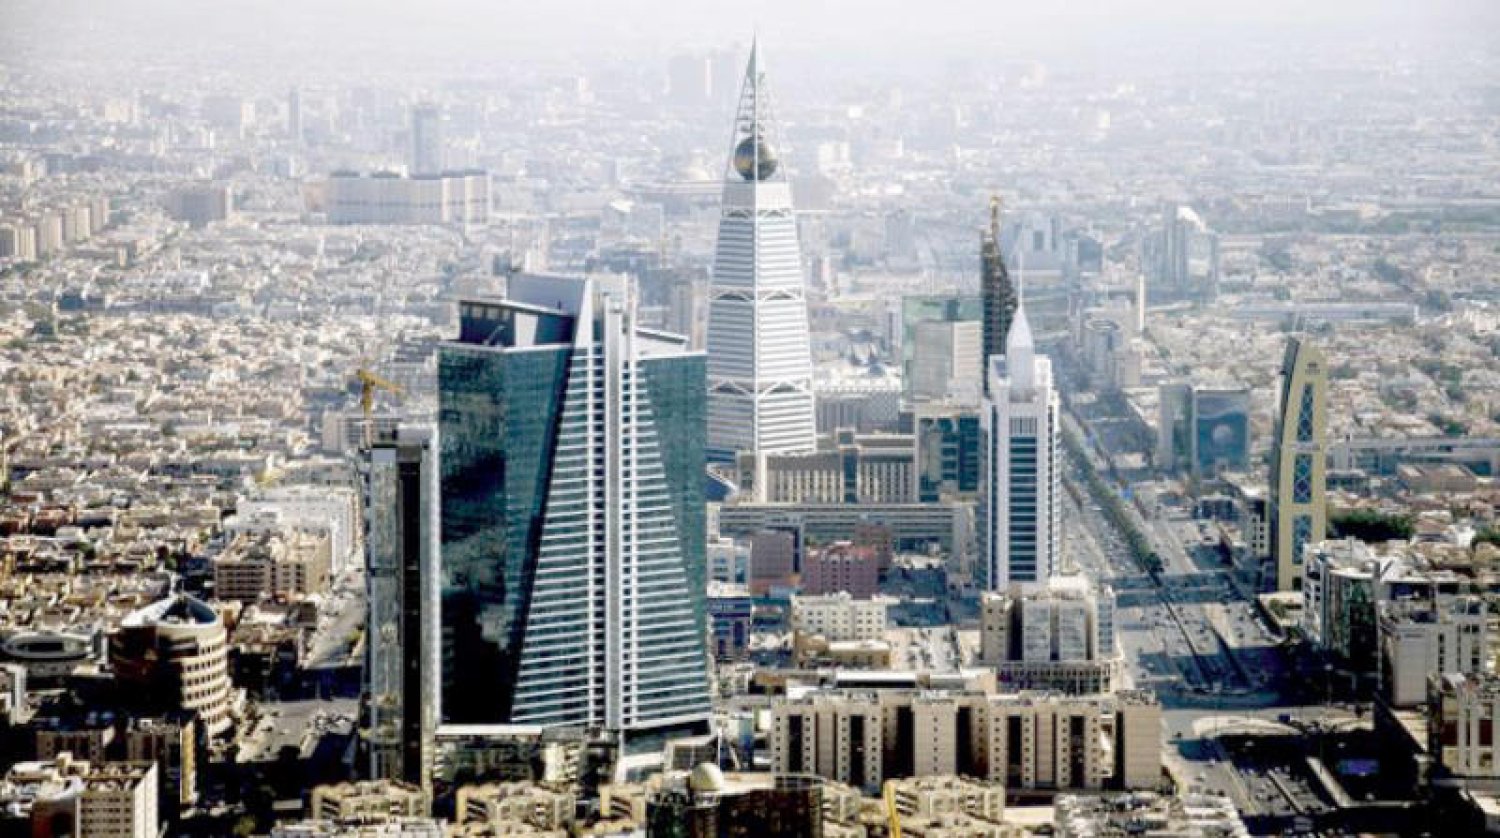 توقعات بمصاعب كبيرة ستواجه اقتصاد السعودية في ظل الفشل الحكومي